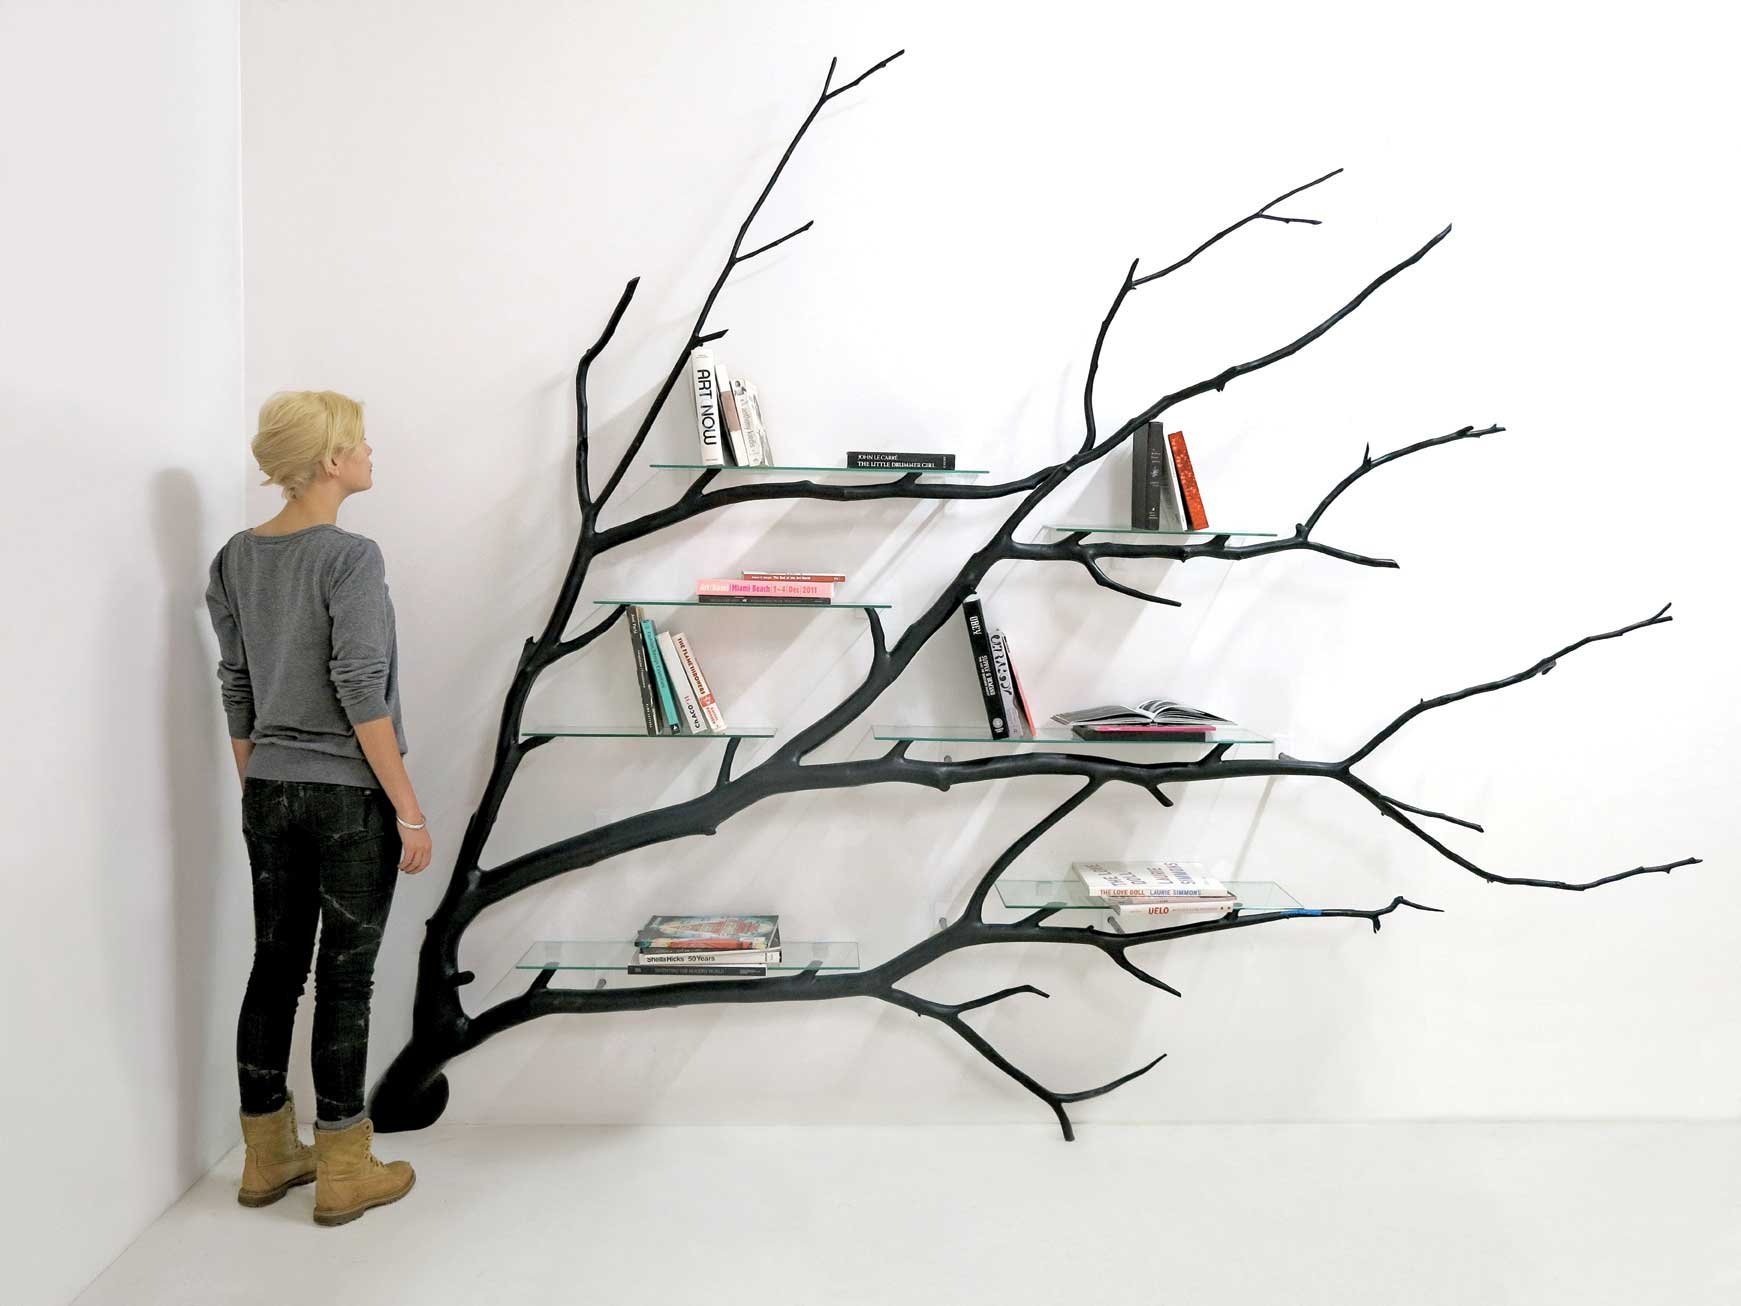 Книжная полка в виде дерева, творческий подход к хранению книг